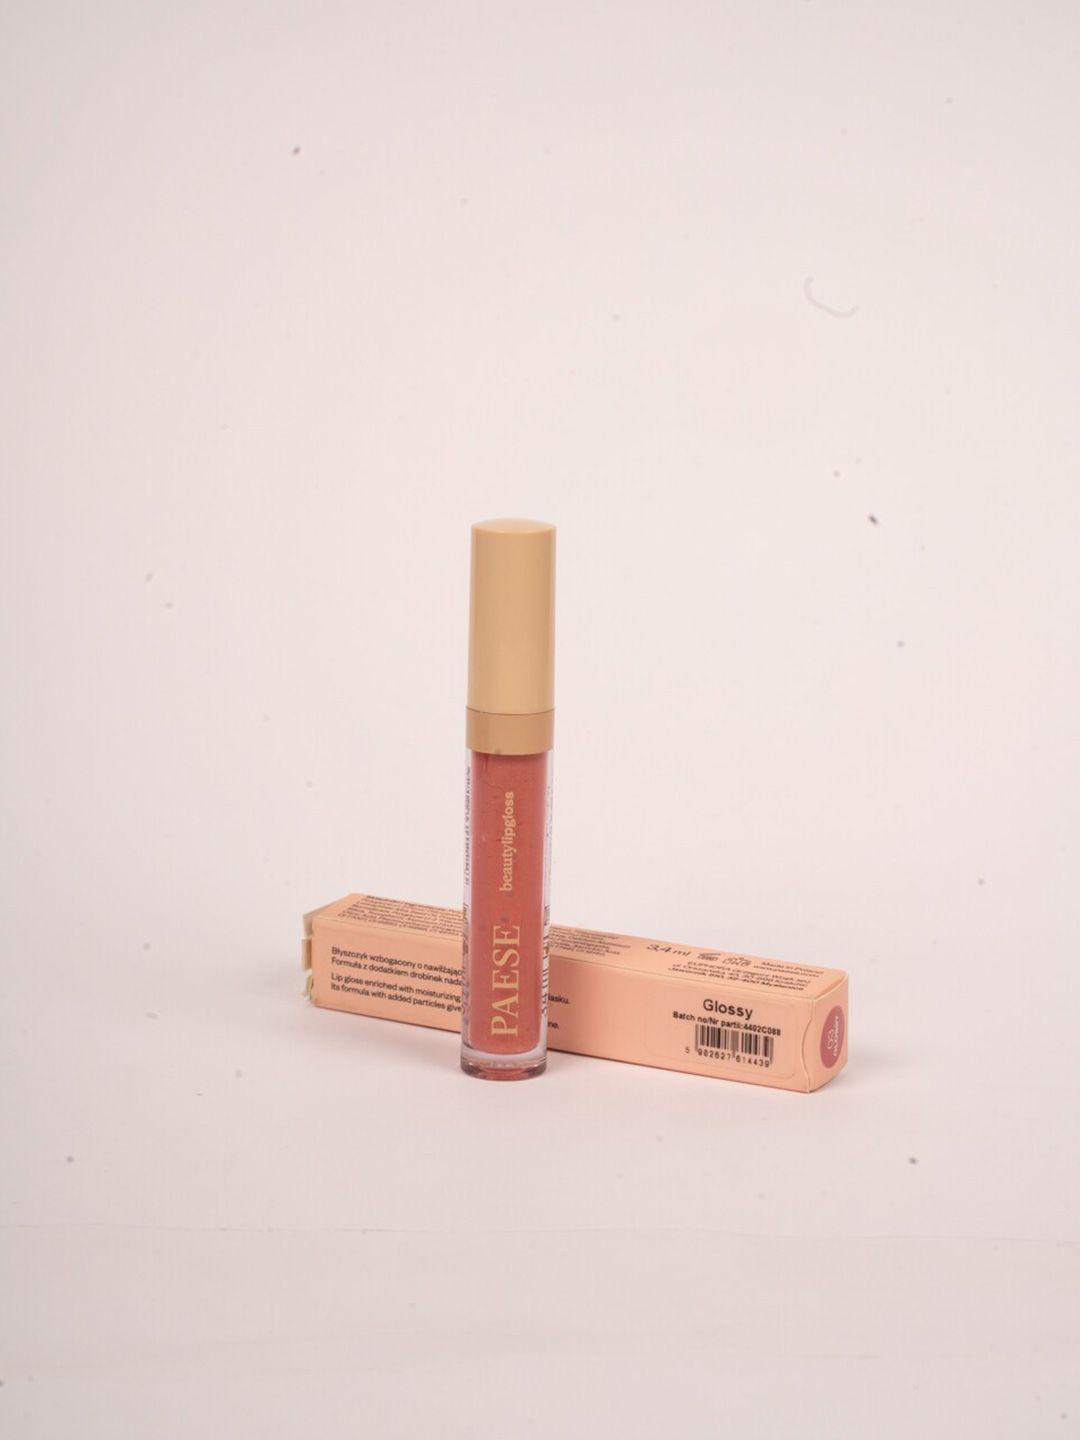 paese cosmetics beauty lip gloss 3.4 ml - glassy 1